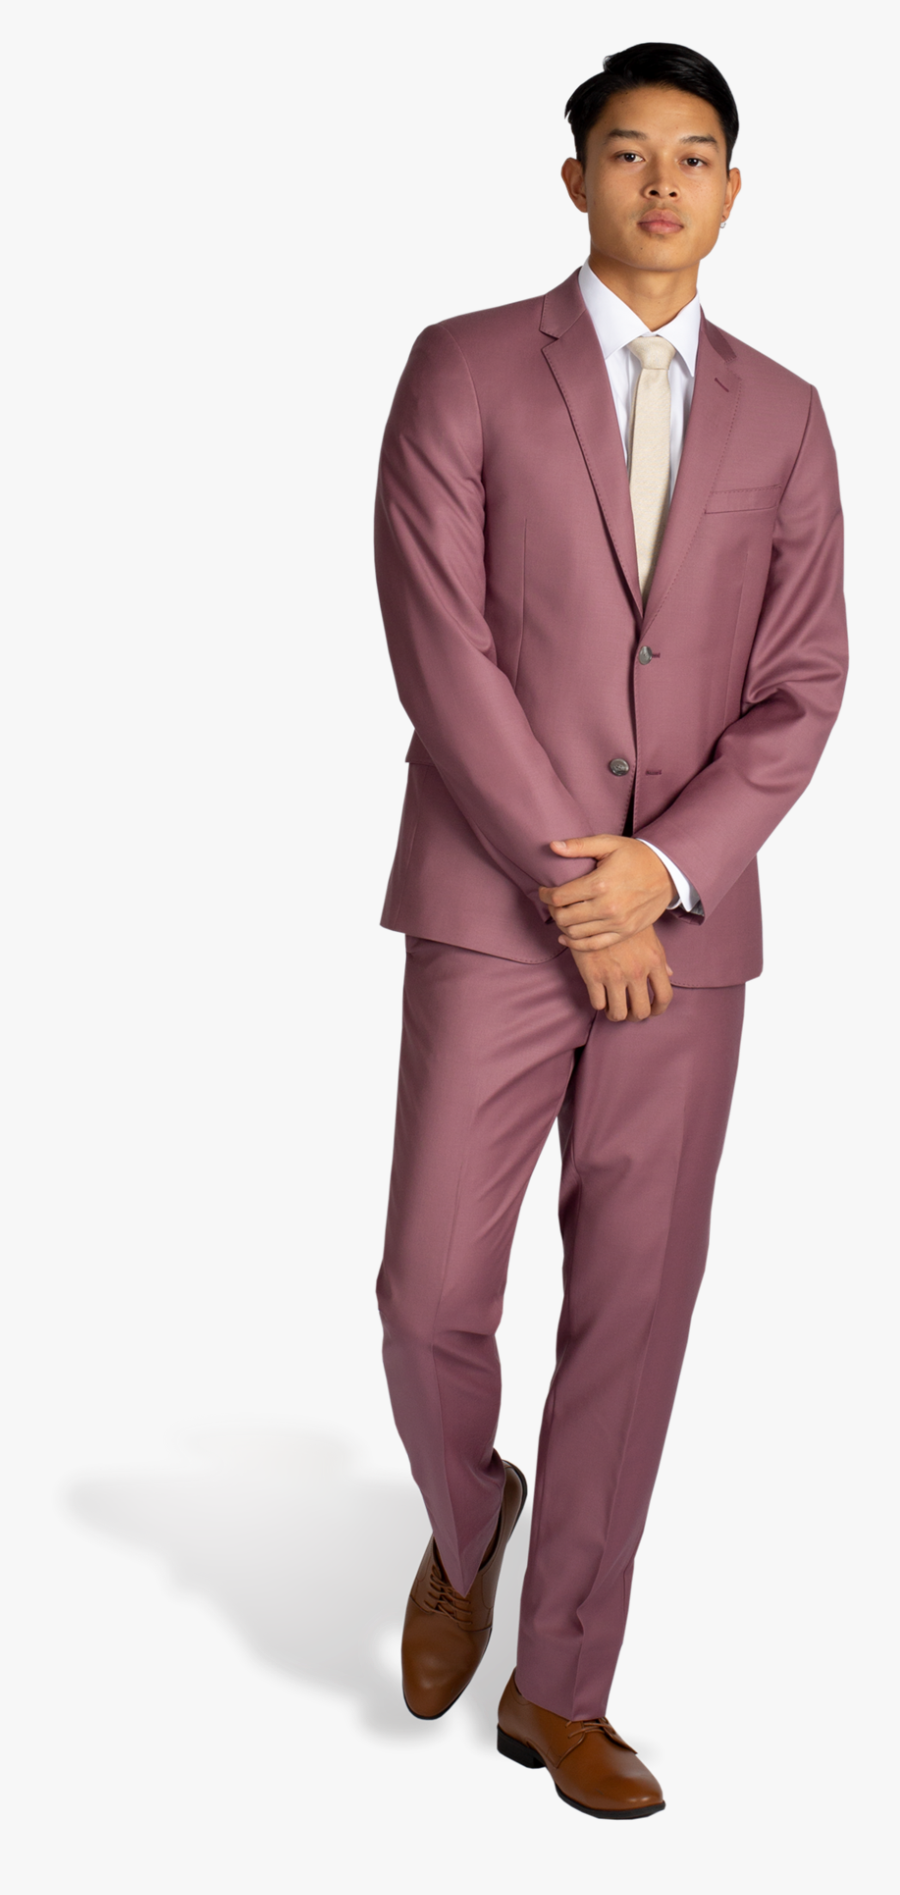 Transparent Suit And Tie Png - Light Maroon Suit Men, Transparent Clipart